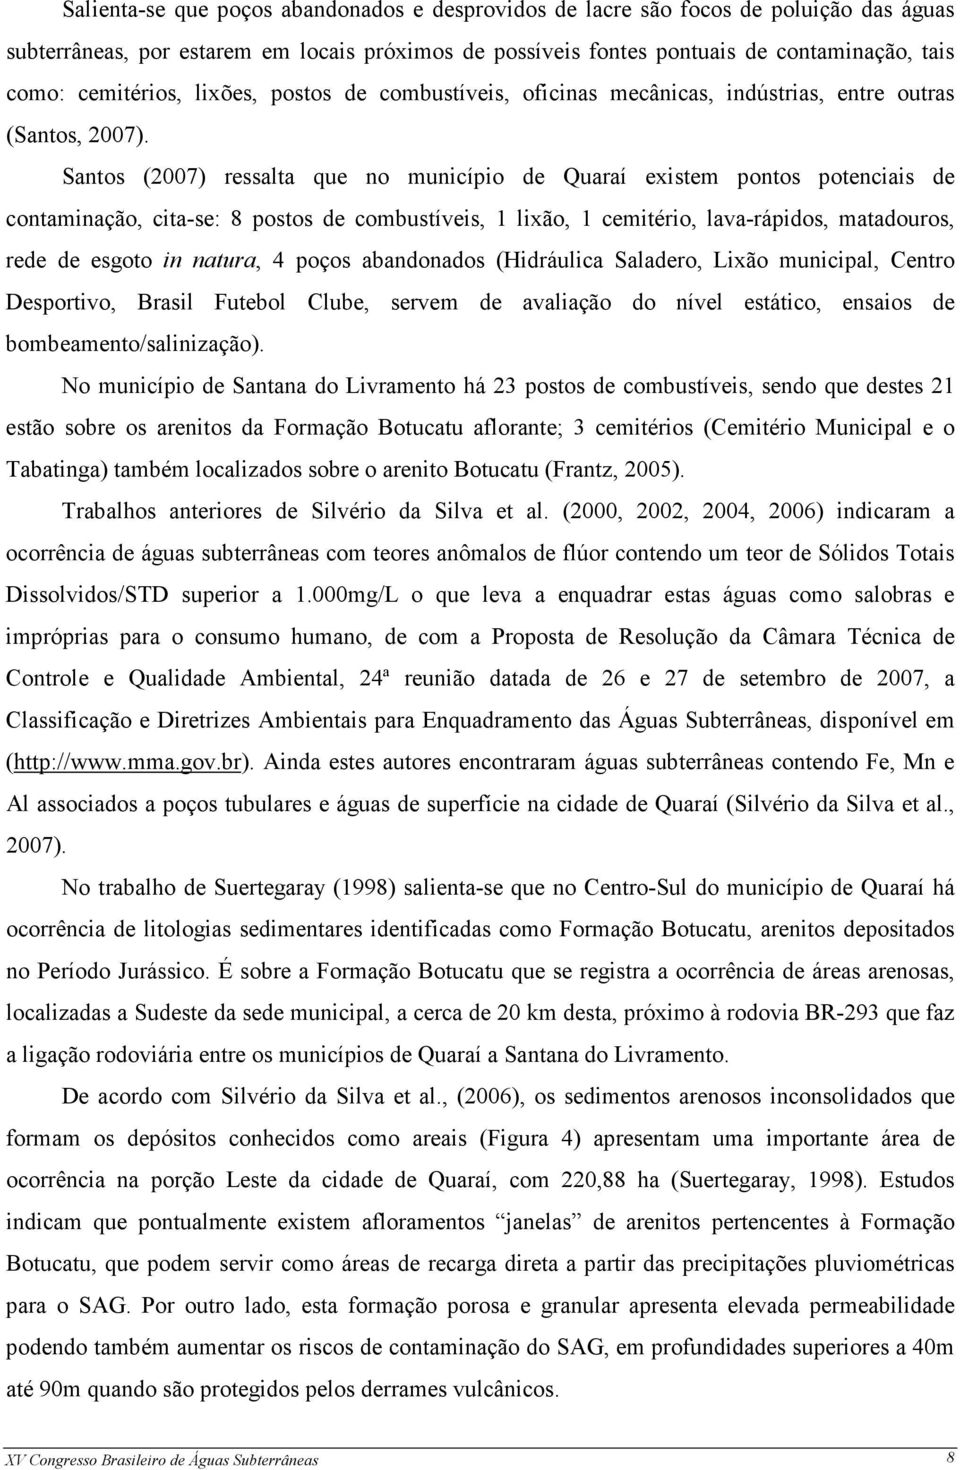 Santos (2007) ressalta que no município de Quaraí existem pontos potenciais de contaminação, cita-se: 8 postos de combustíveis, 1 lixão, 1 cemitério, lava-rápidos, matadouros, rede de esgoto in